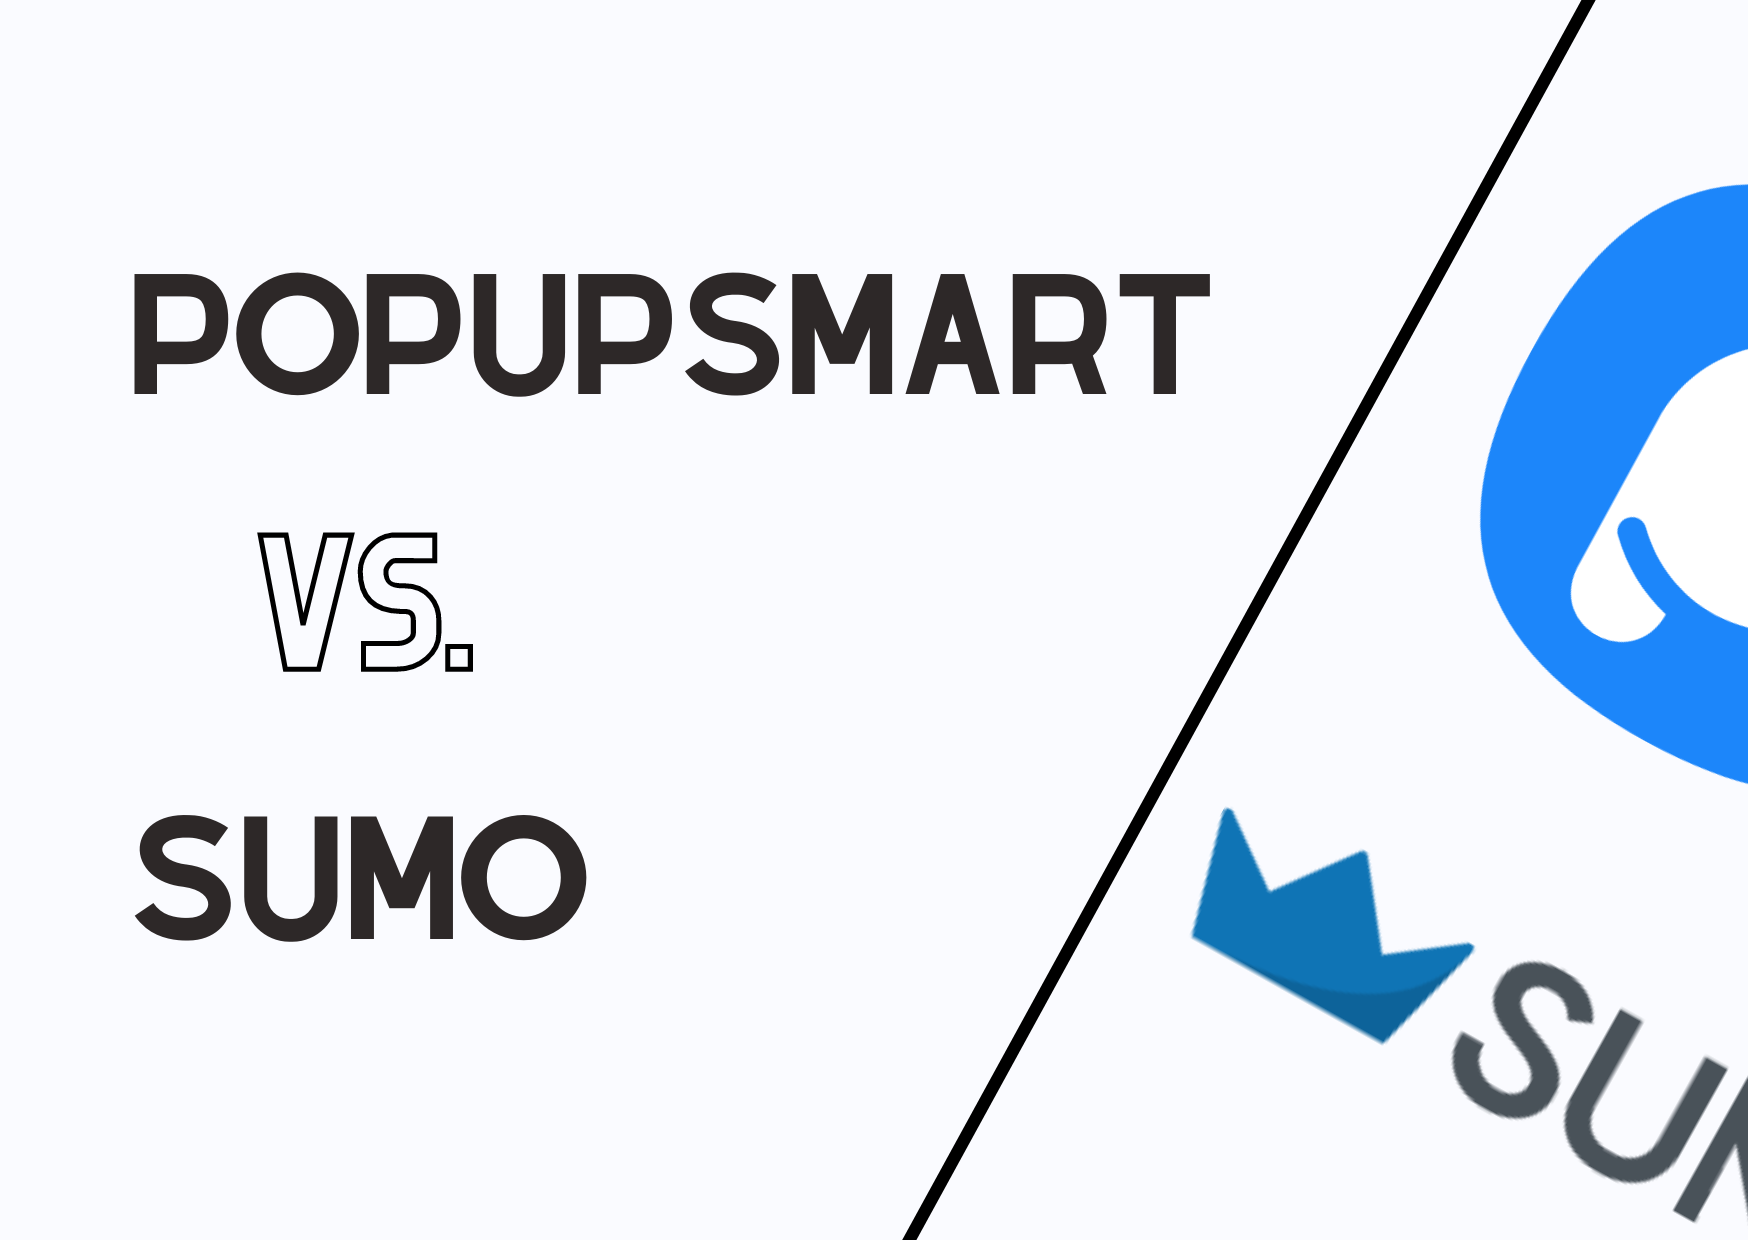 Comparing Popupsmart and Sumo 